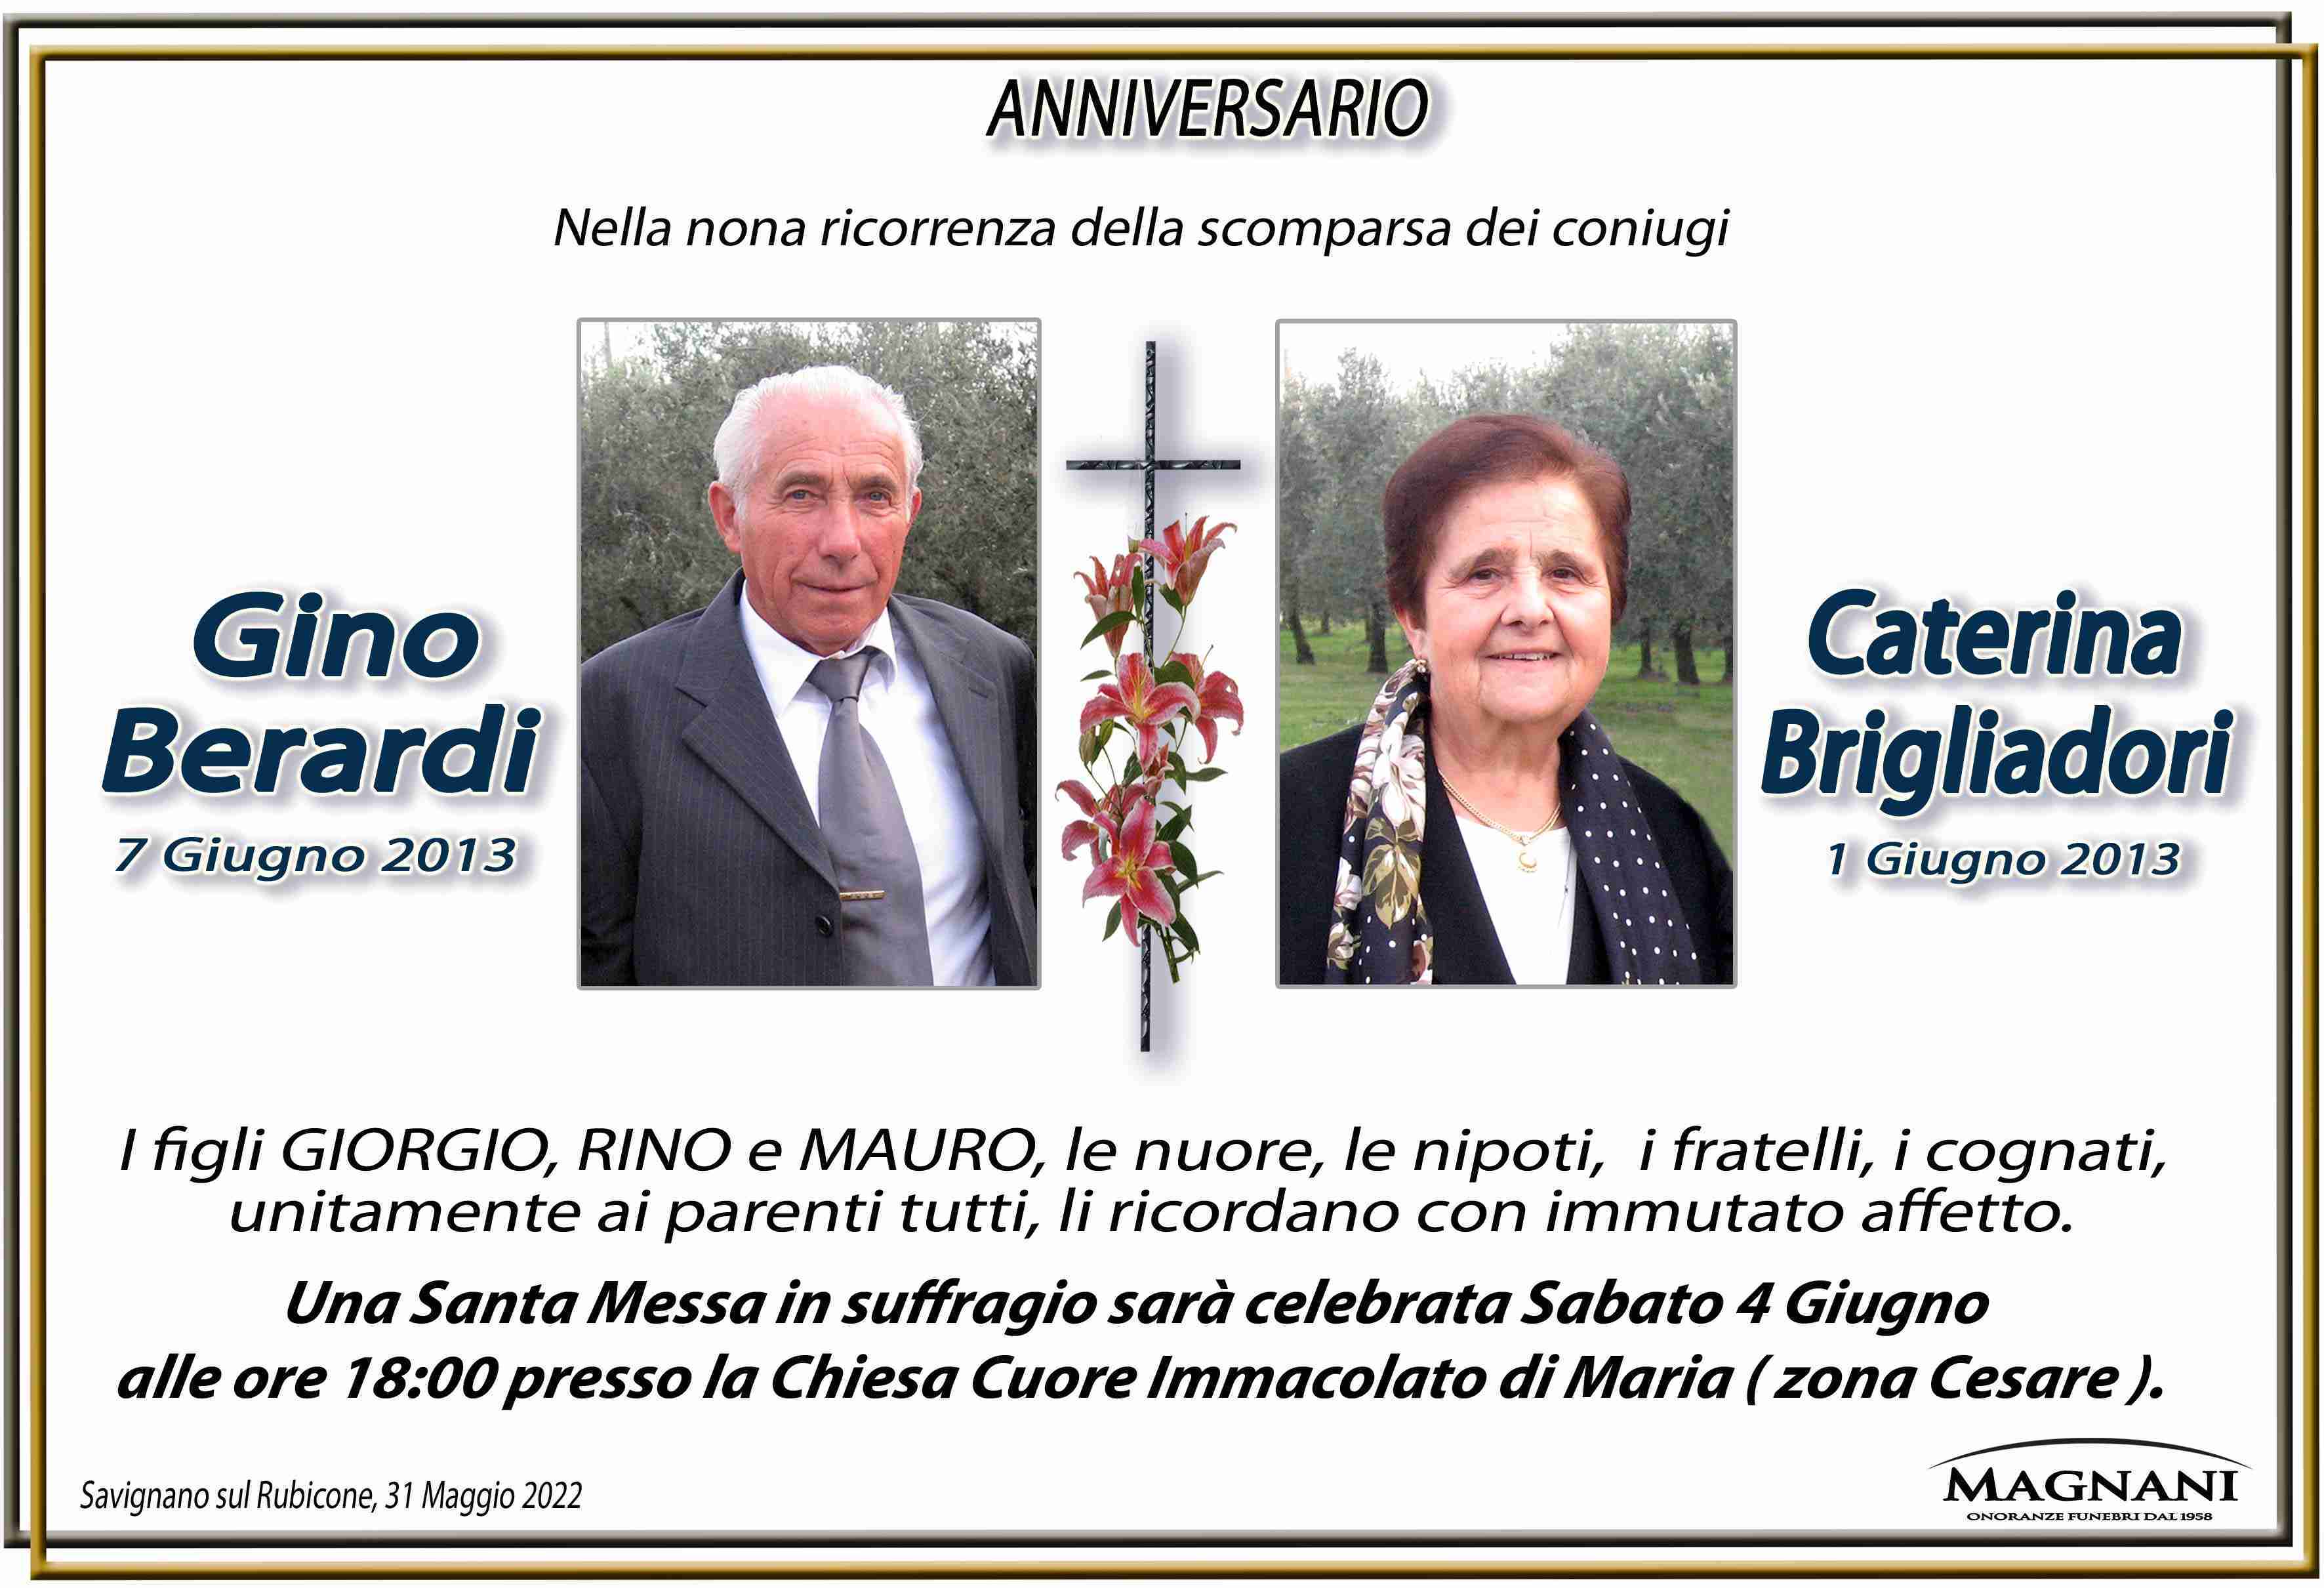 Gino Berardi e Caterina Brigliadori